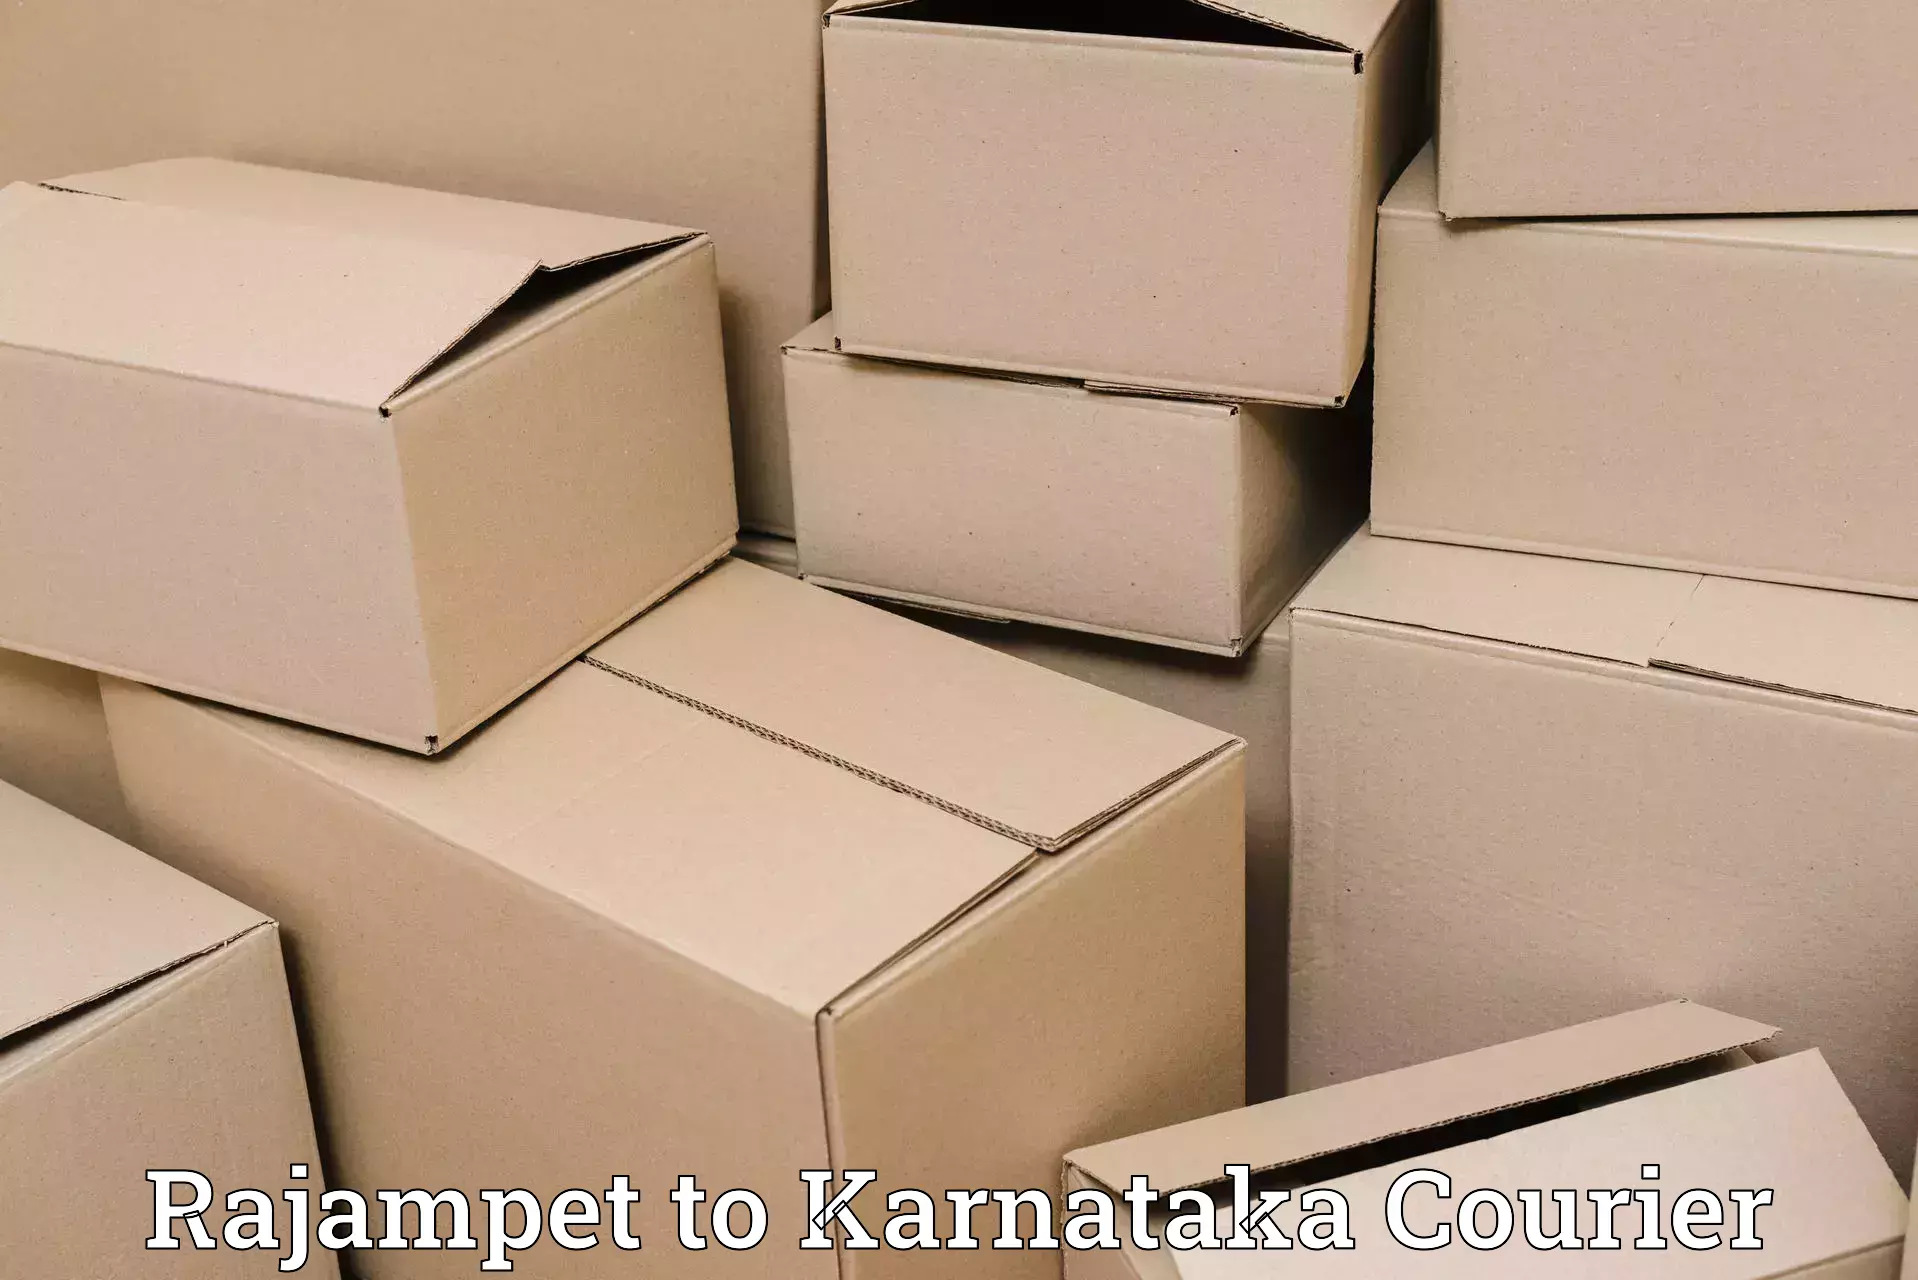 Baggage transport network Rajampet to Karnataka